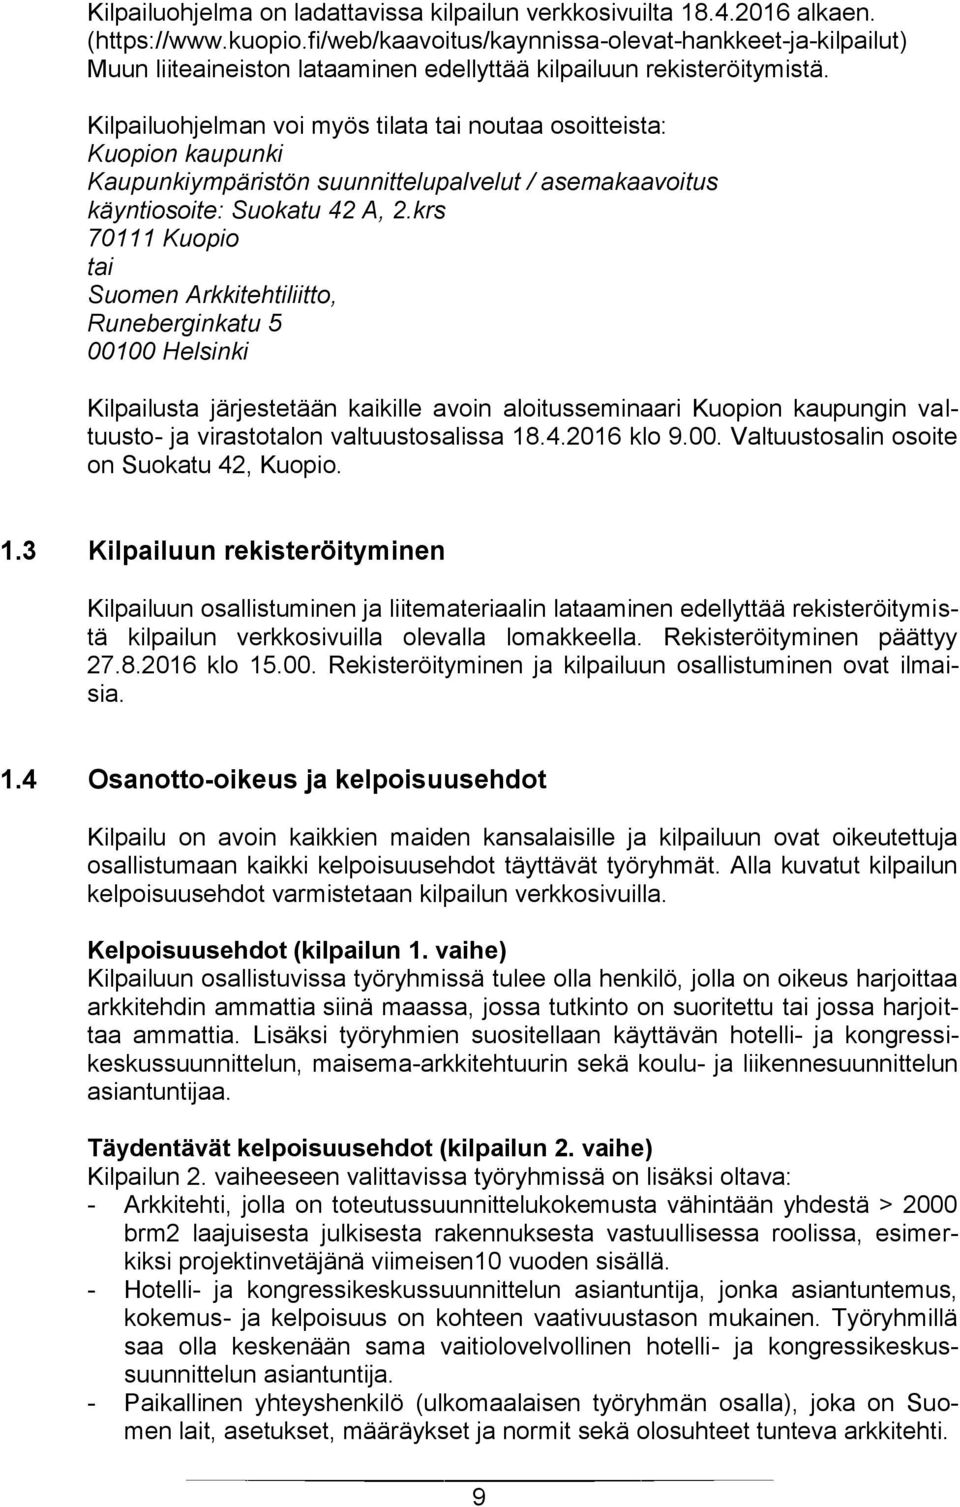 Kilpailuohjelman voi myös tilata tai noutaa osoitteista: Kuopion kaupunki Kaupunkiympäristön suunnittelupalvelut / asemakaavoitus käyntiosoite: Suokatu 42 A, 2.